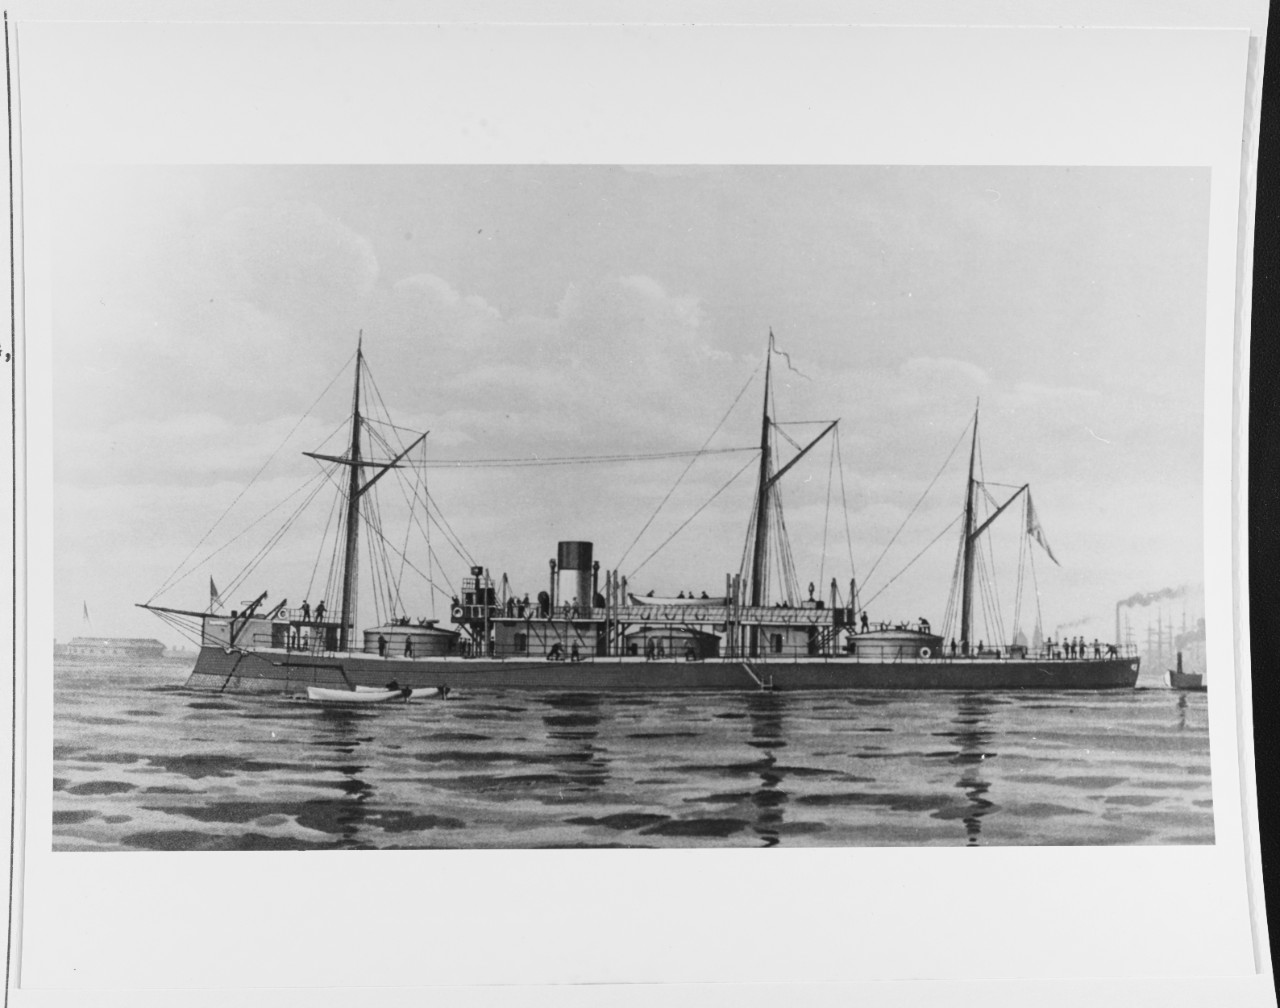 ADMIRAL LAZAREFF (Russian coast-defense ship, 1867)